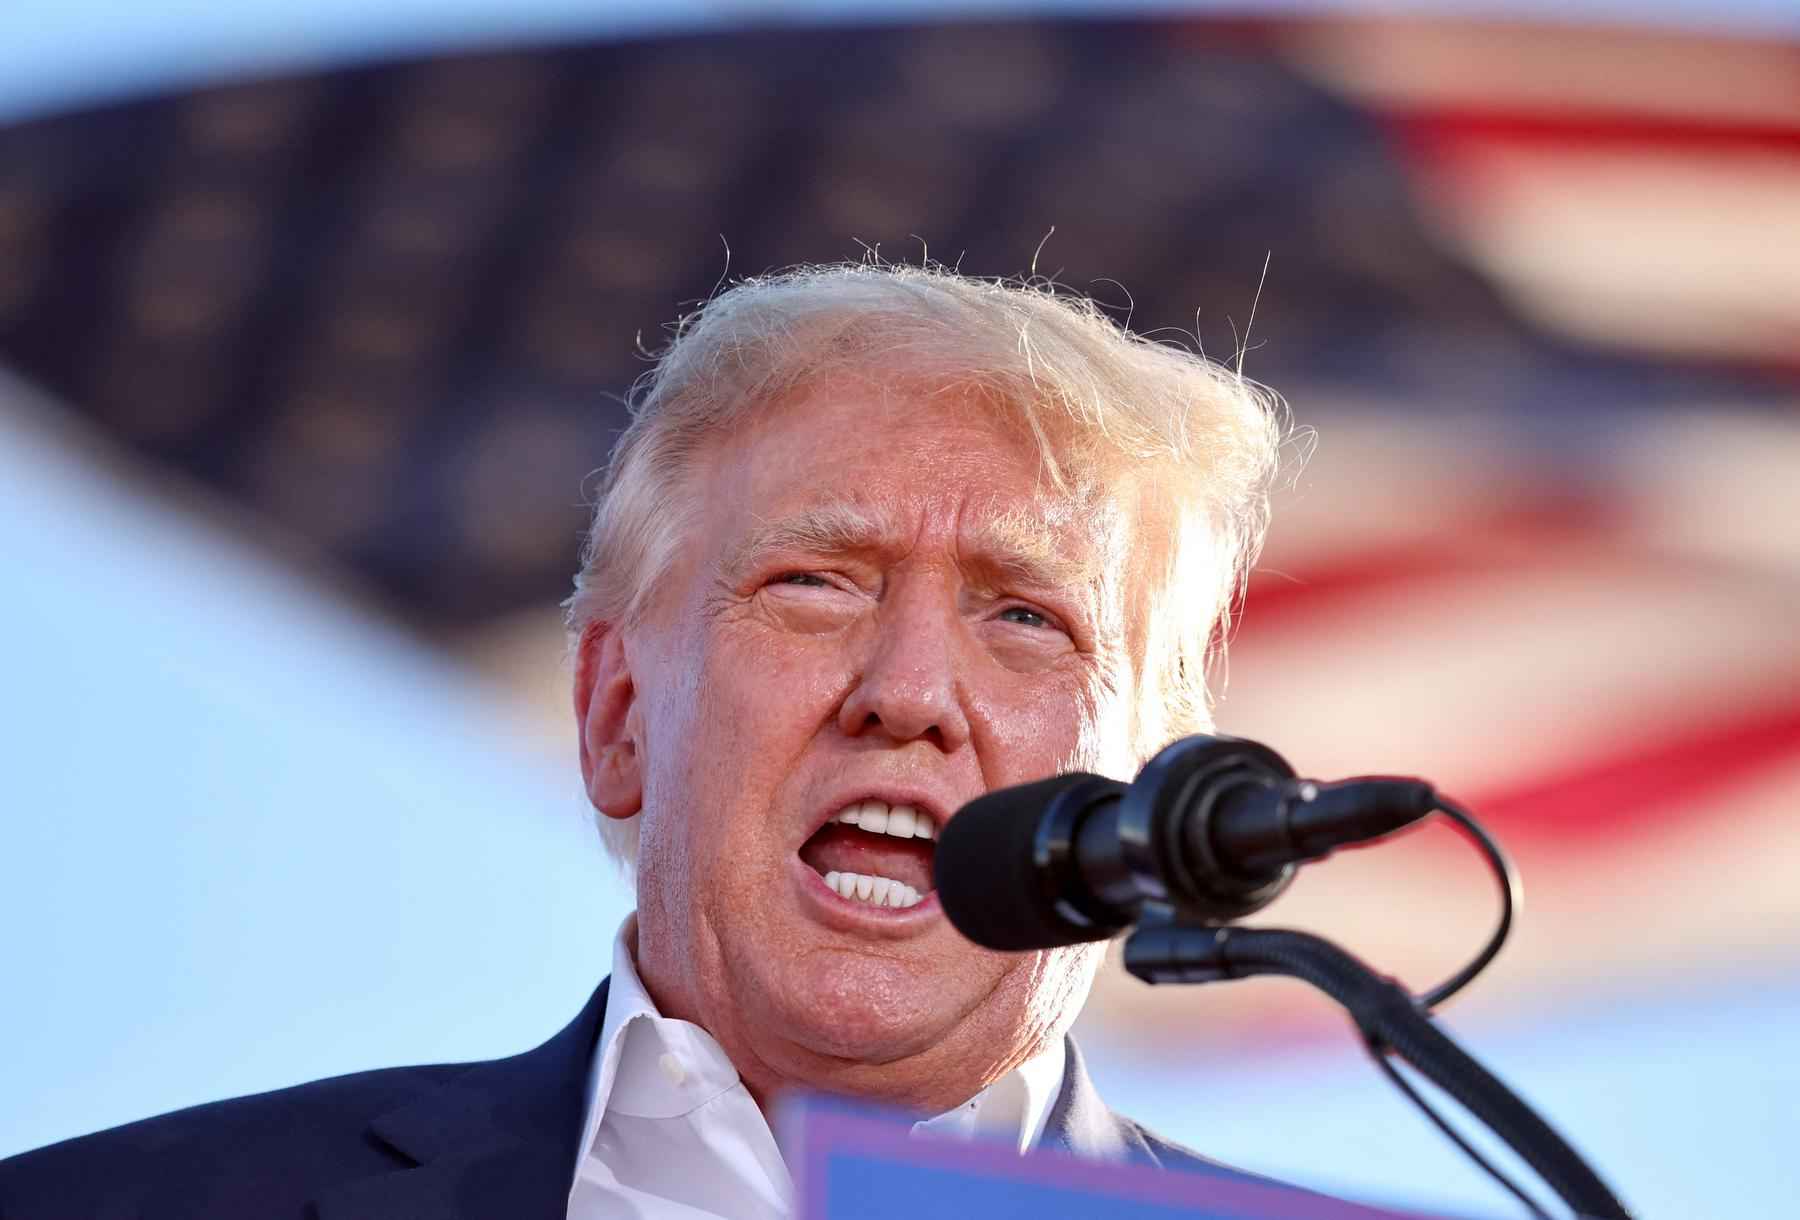 Comitê dos EUA que investiga 6 de janeiro intima Donald Trump a depor - MARIO TAMA / GETTY IMAGES NORTH AMERICA / Getty Images via AFP

